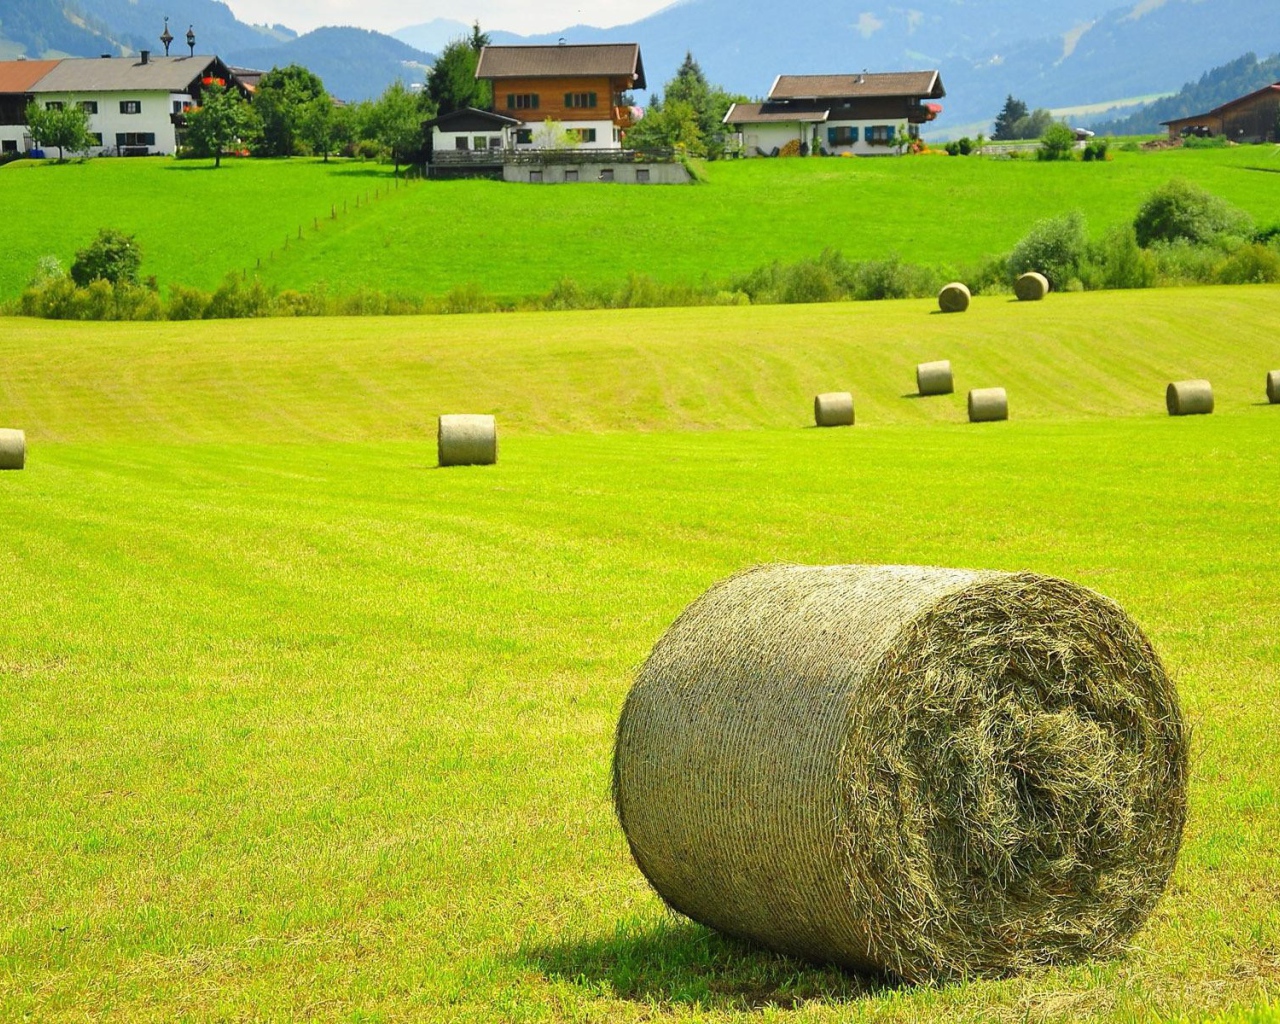 Тюки сена на поле, Австрия